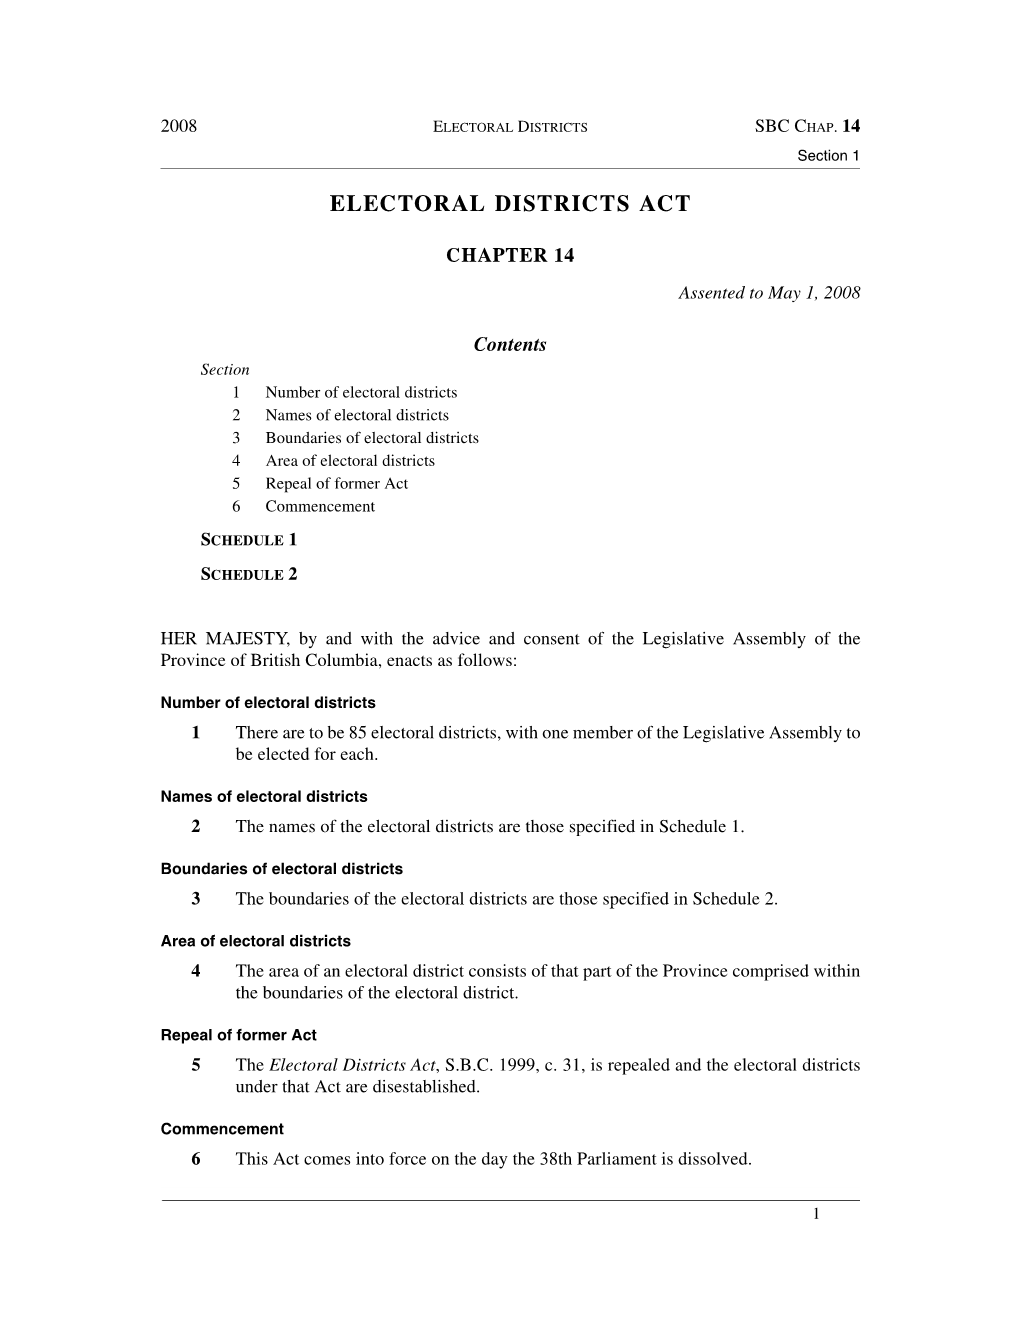 C. 14 – Electoral Districts